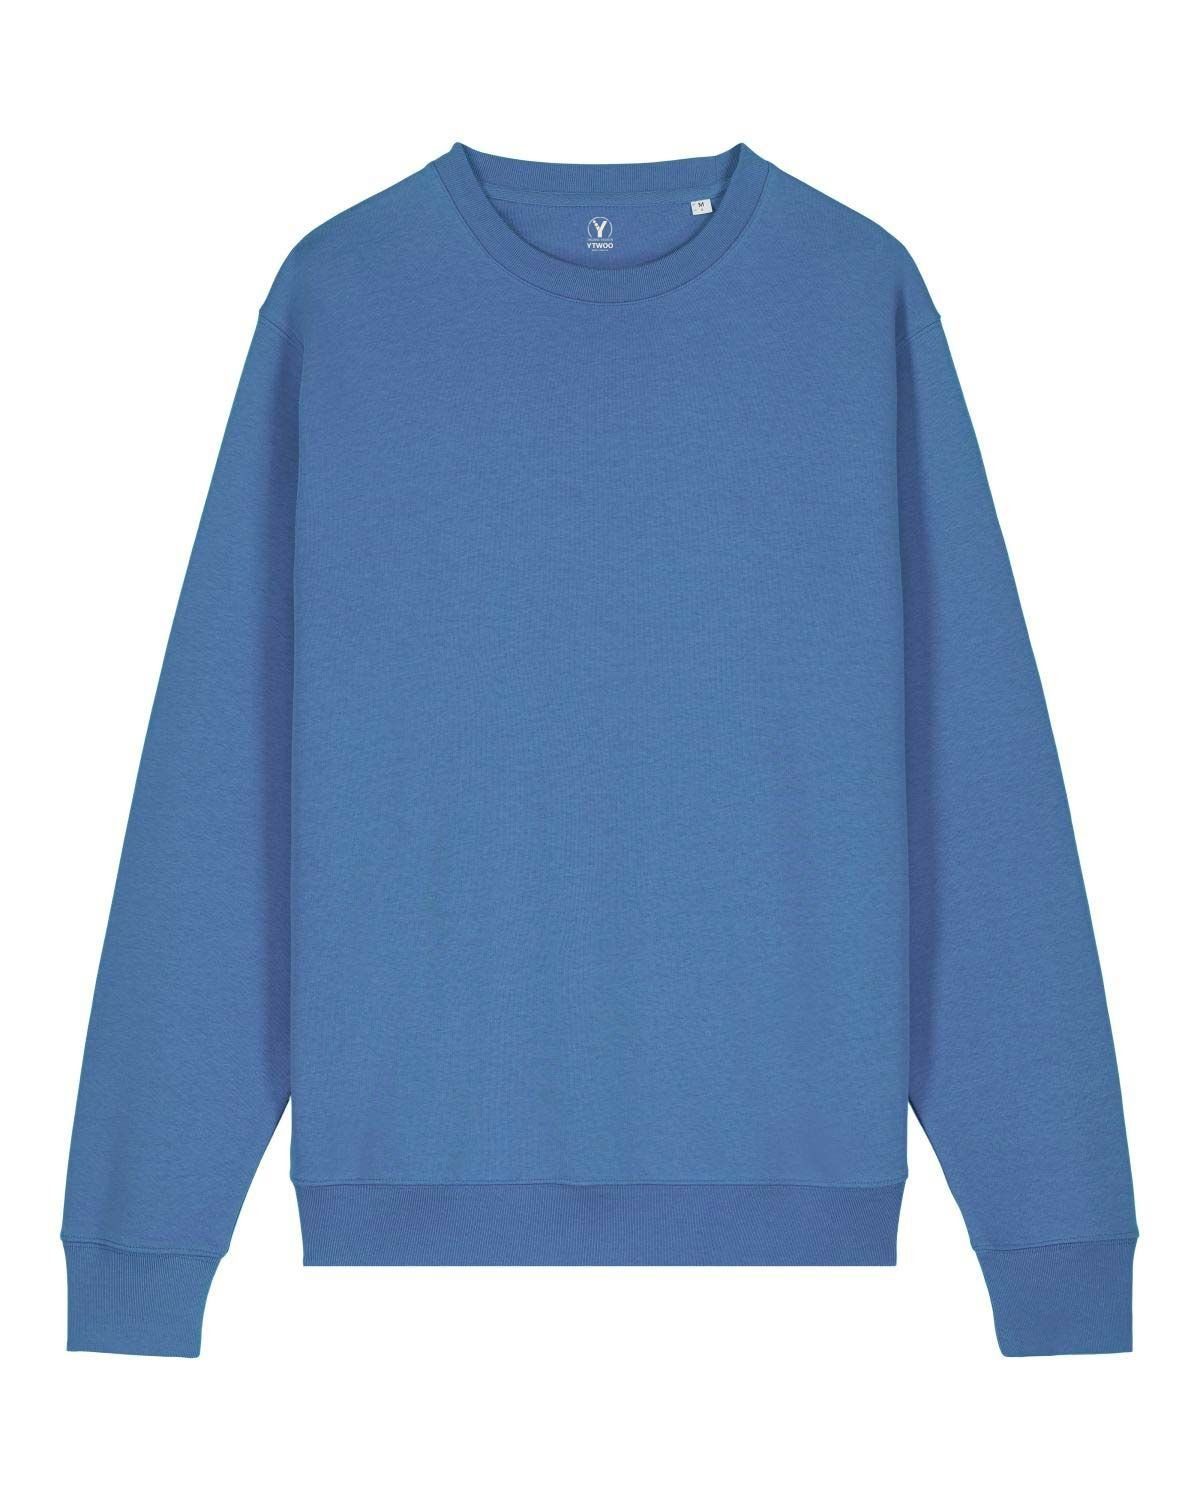 Bright YTWOO Blue Sweatshirt USW.08.BrB.2XL